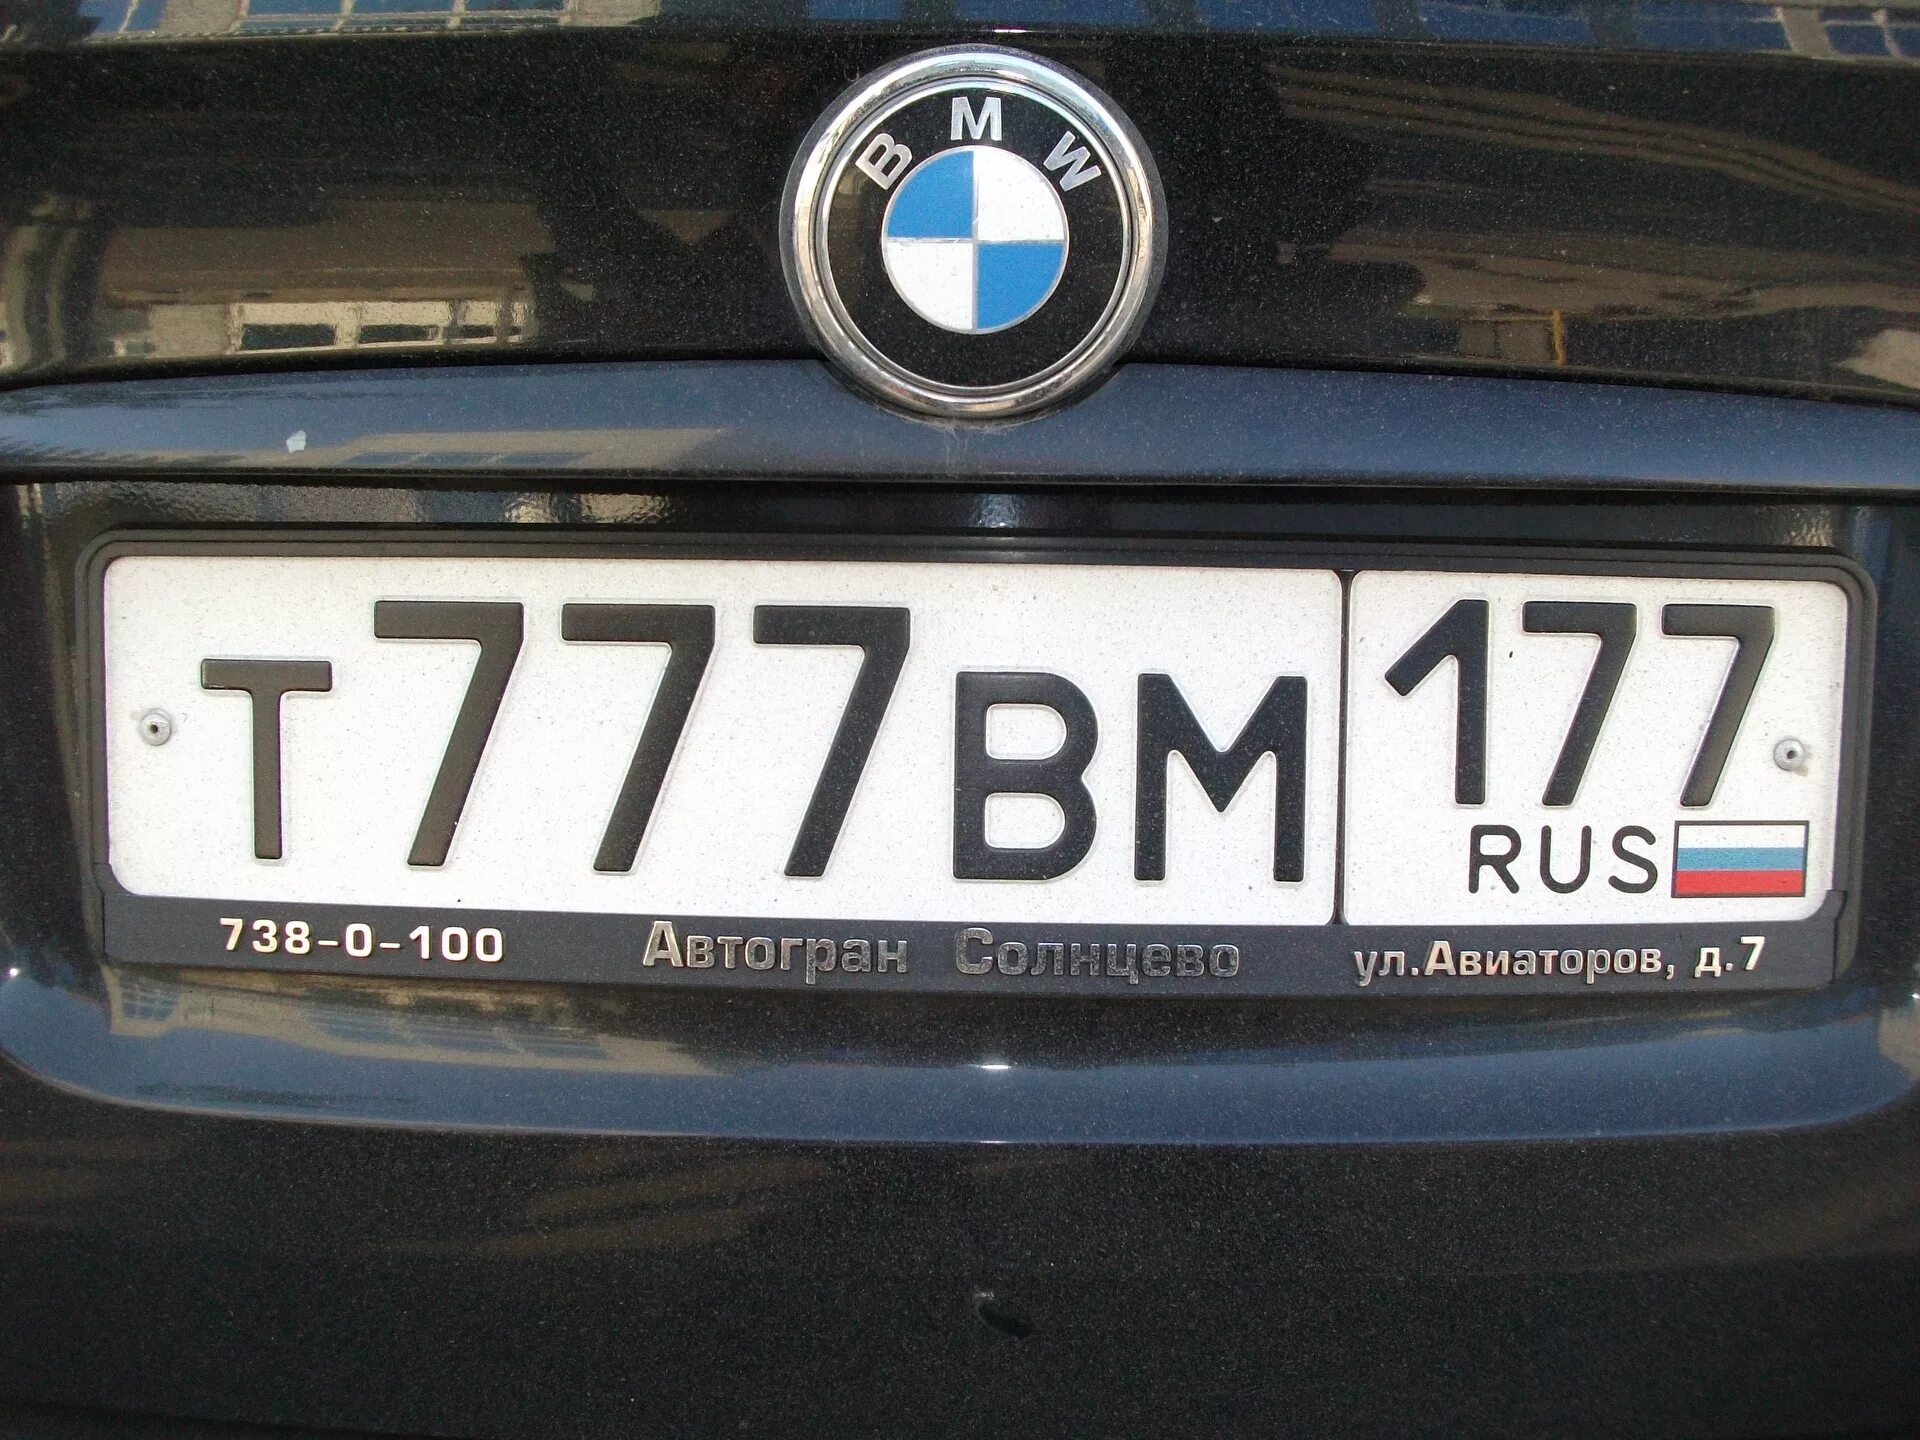 Запрет на российские номера. Номера машин. Номерной знак автомобиля. Российские номера. Российские номера машин.